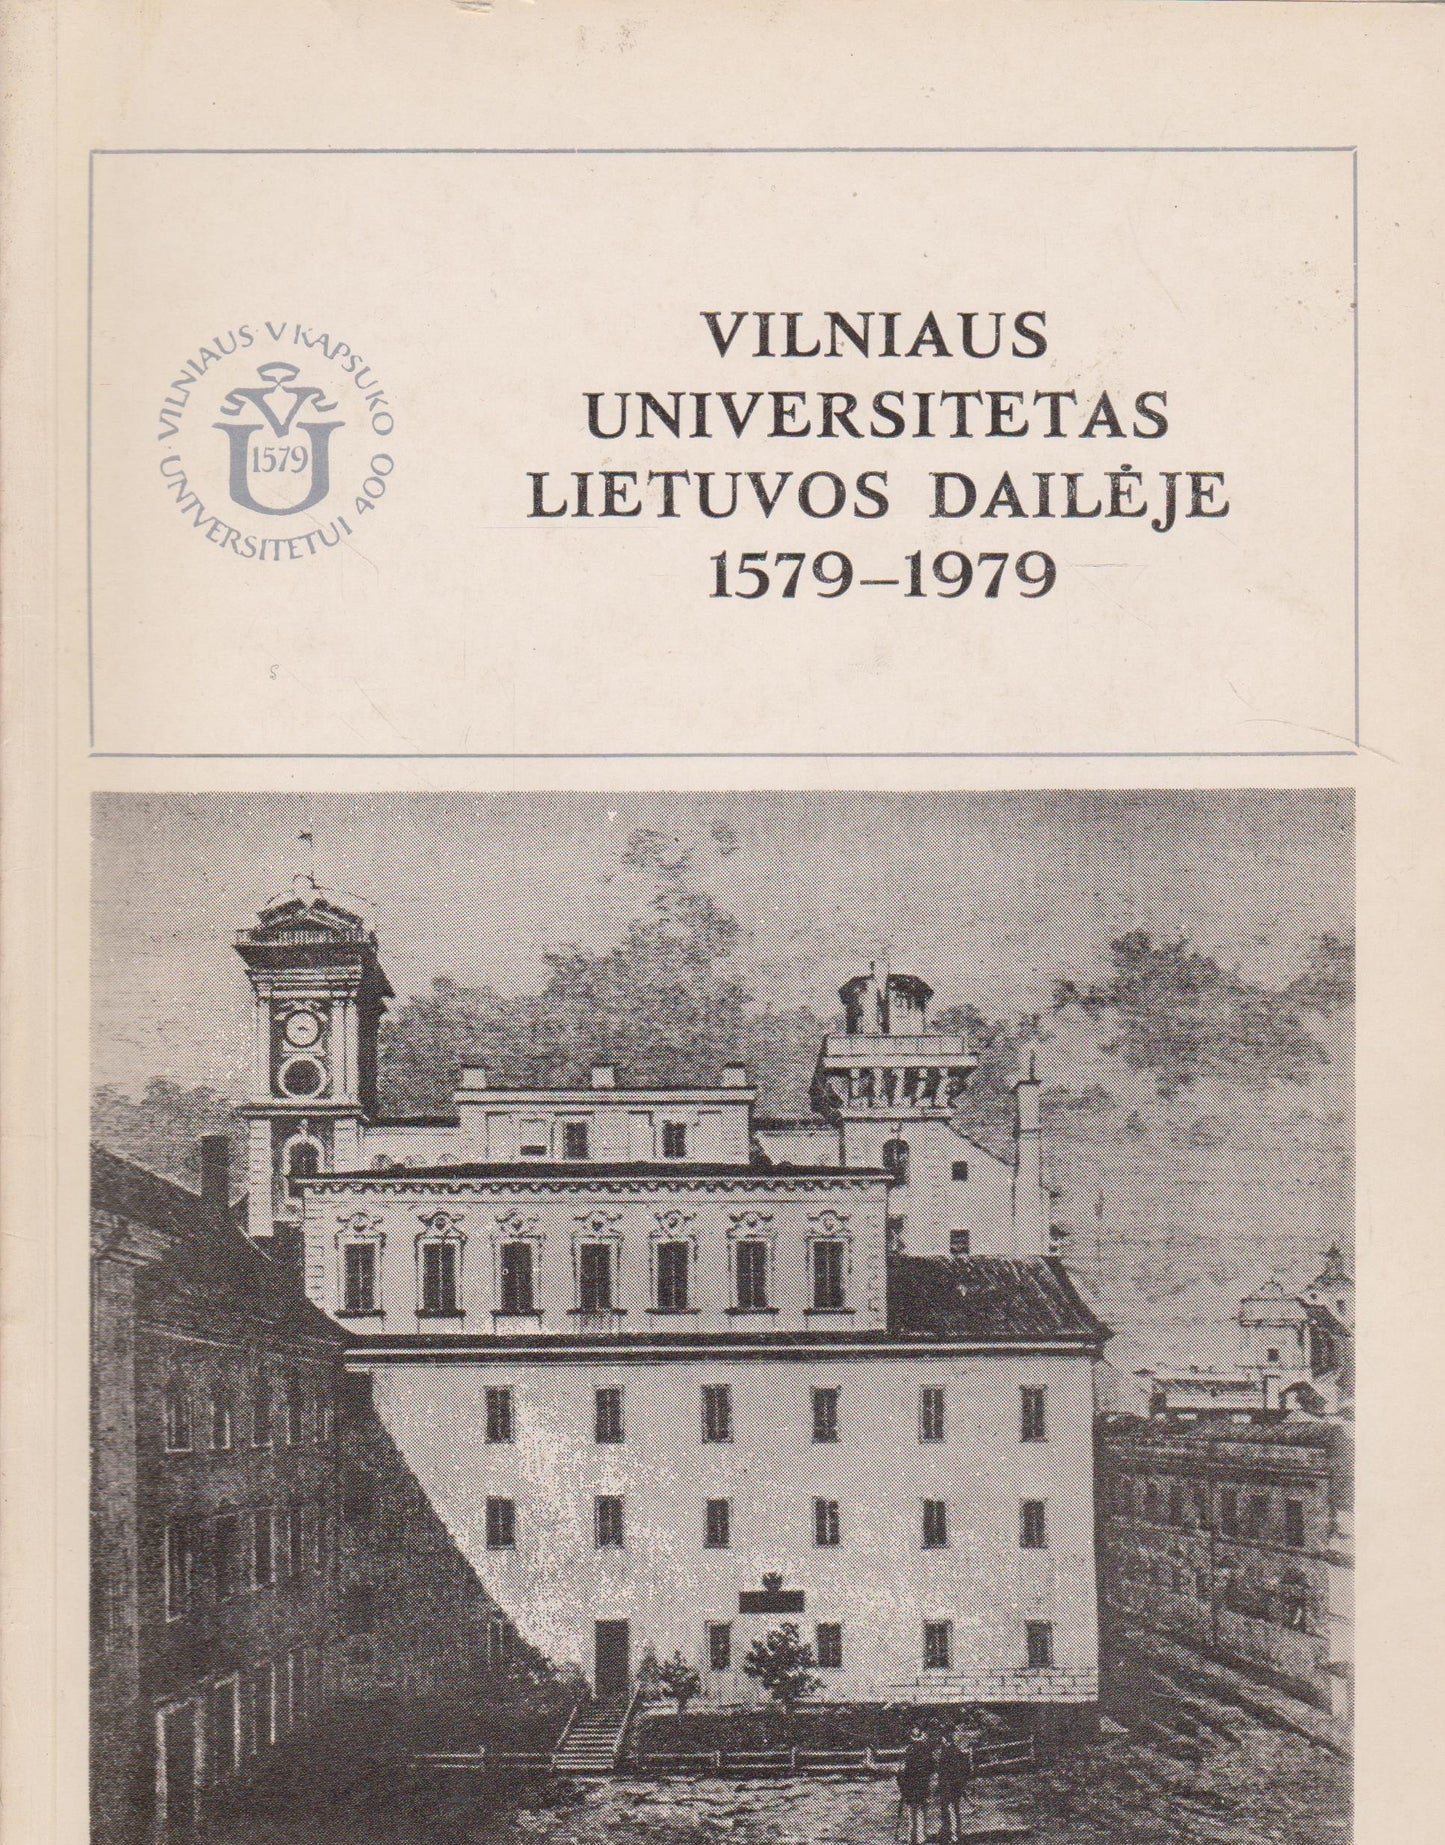 Vilniaus universitetas Lietuvos dailėje 1579-1979